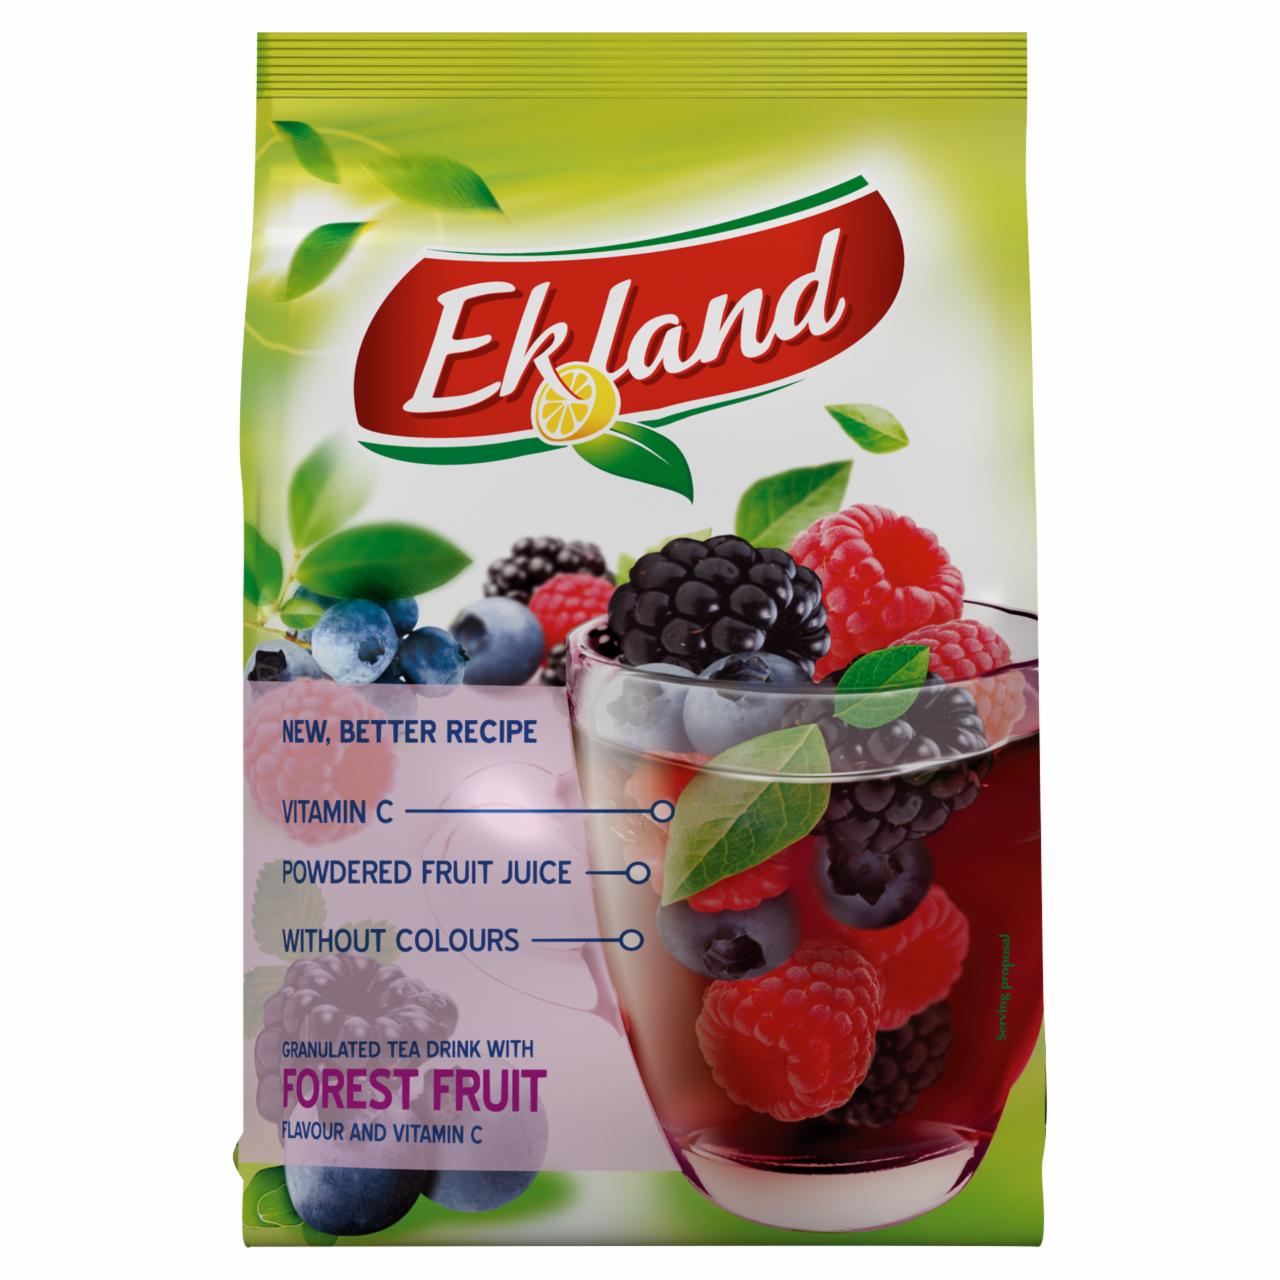 Képek - Ekland azonnal oldódó erdei vegyesgyümölcs ízű tea üdítőitalpor C-vitaminnal 300 g